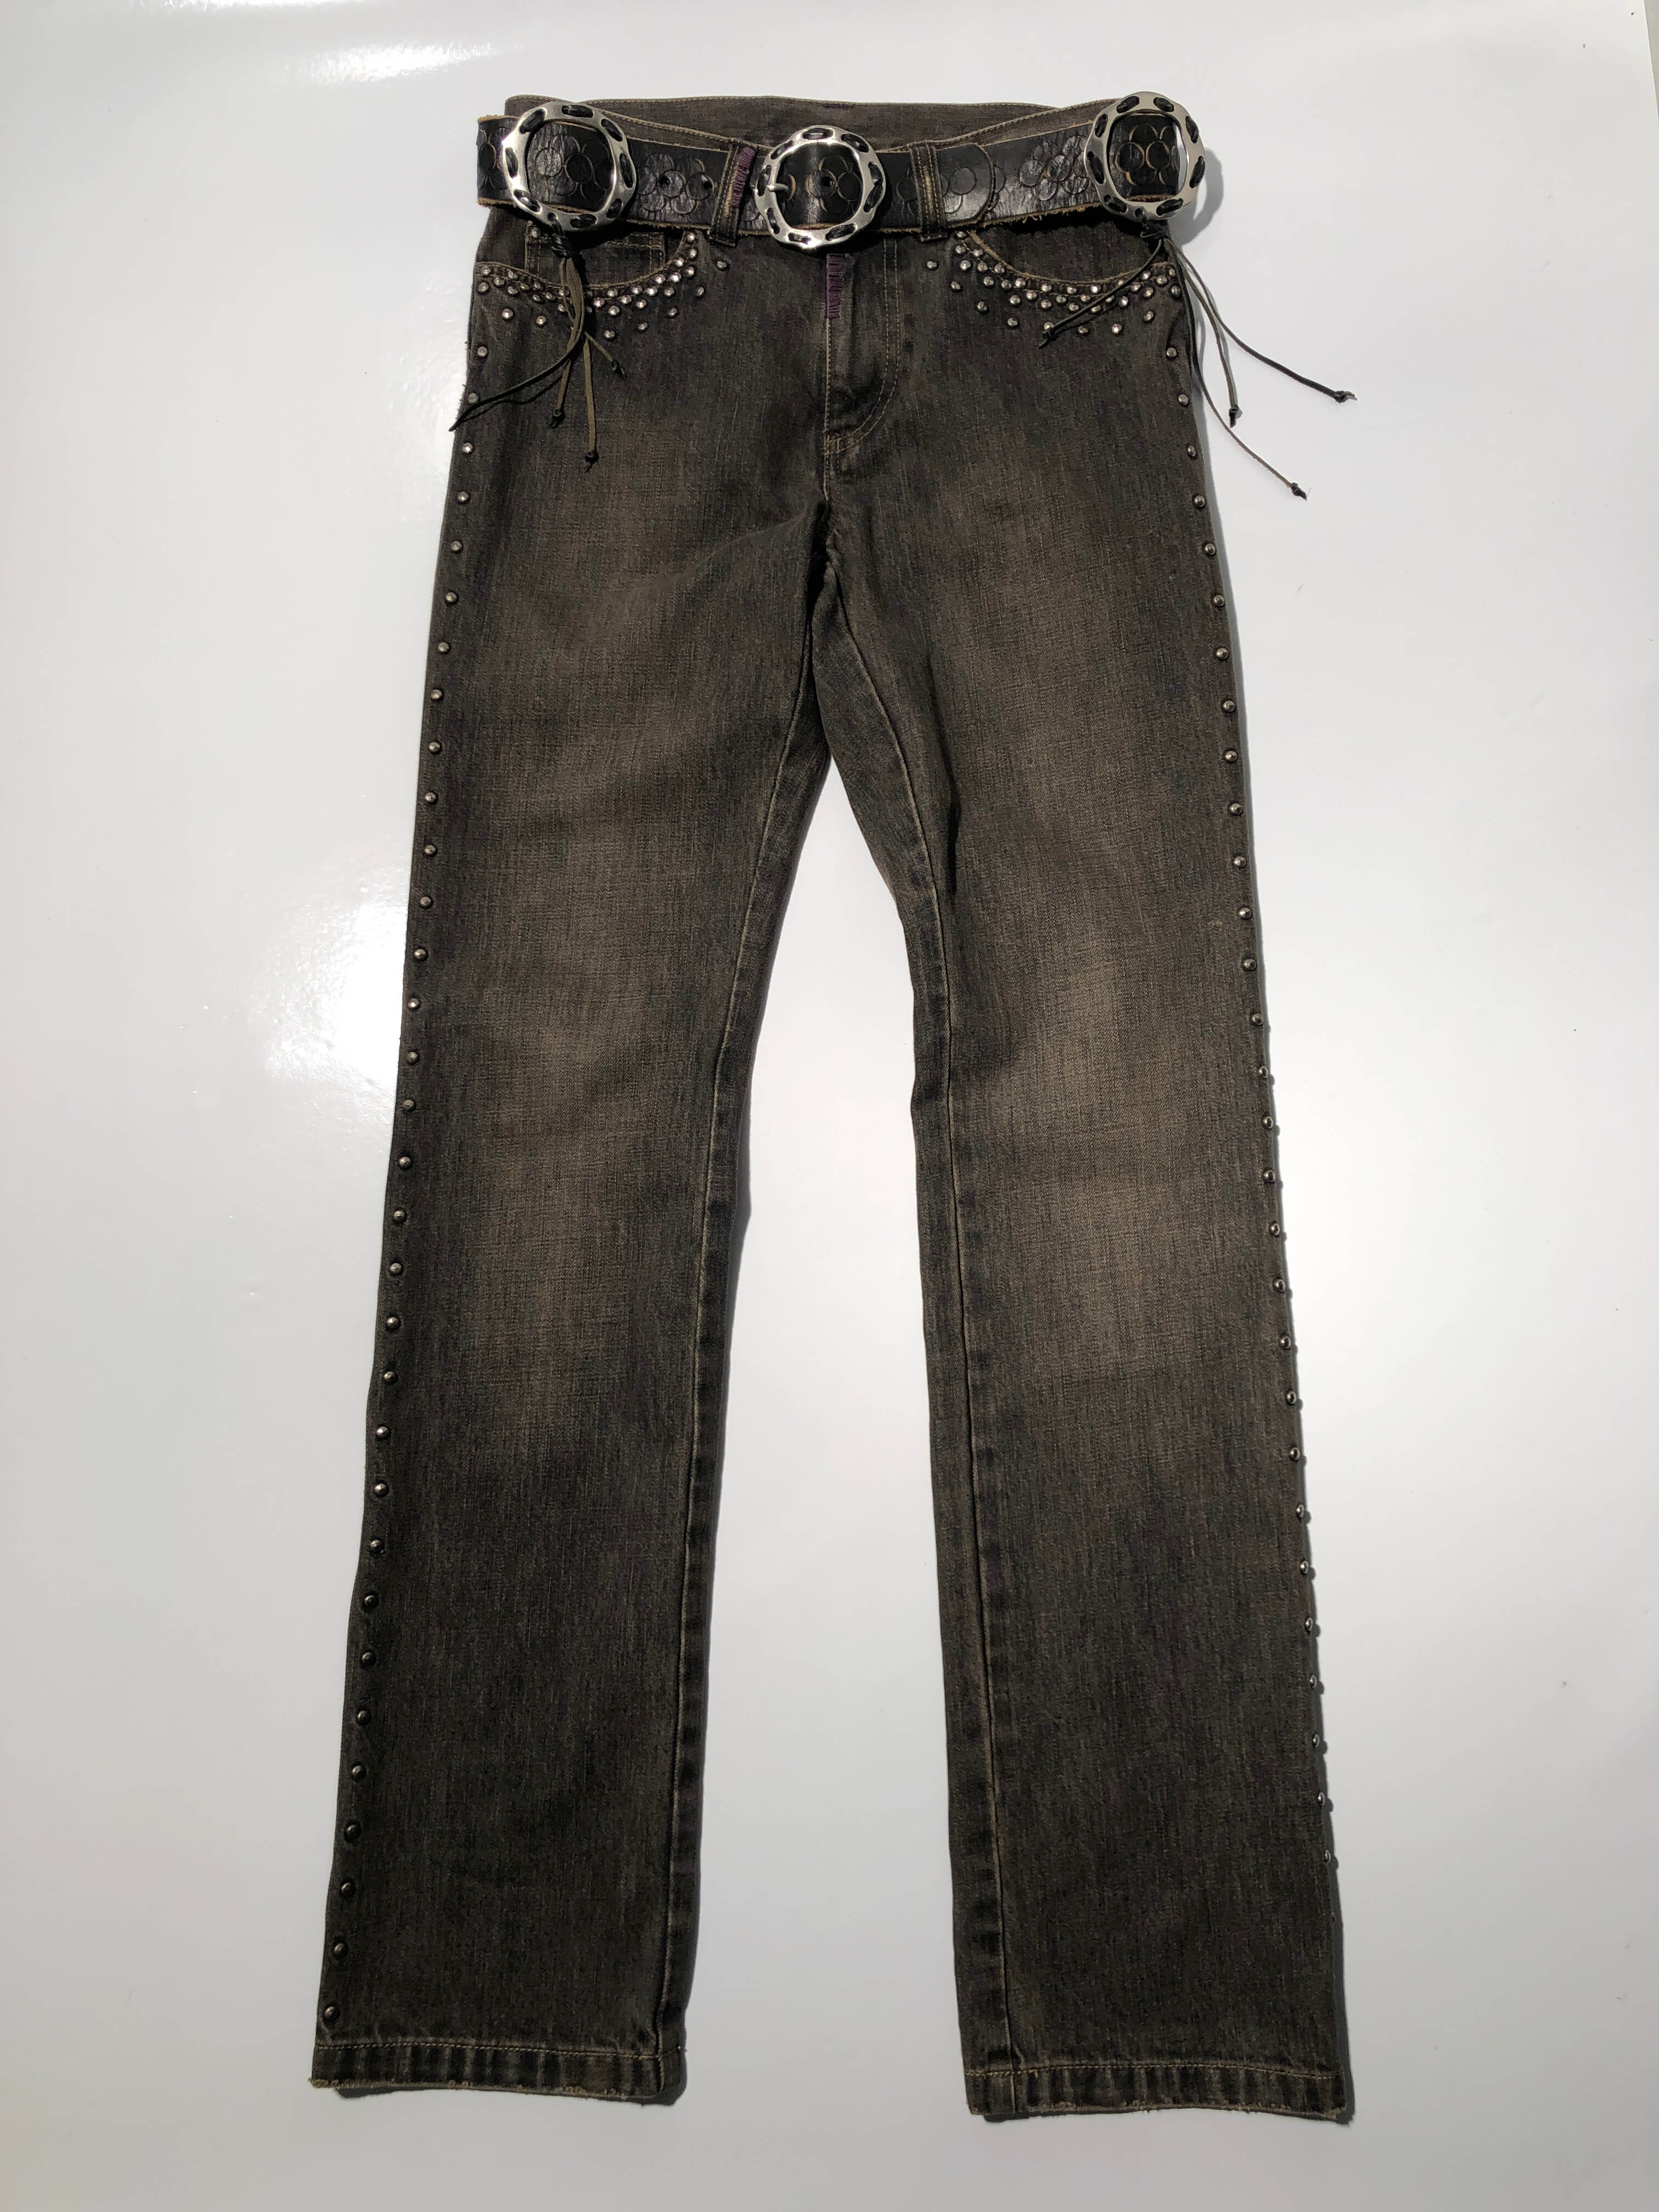 katharine hamnett studded jeans + leather belt